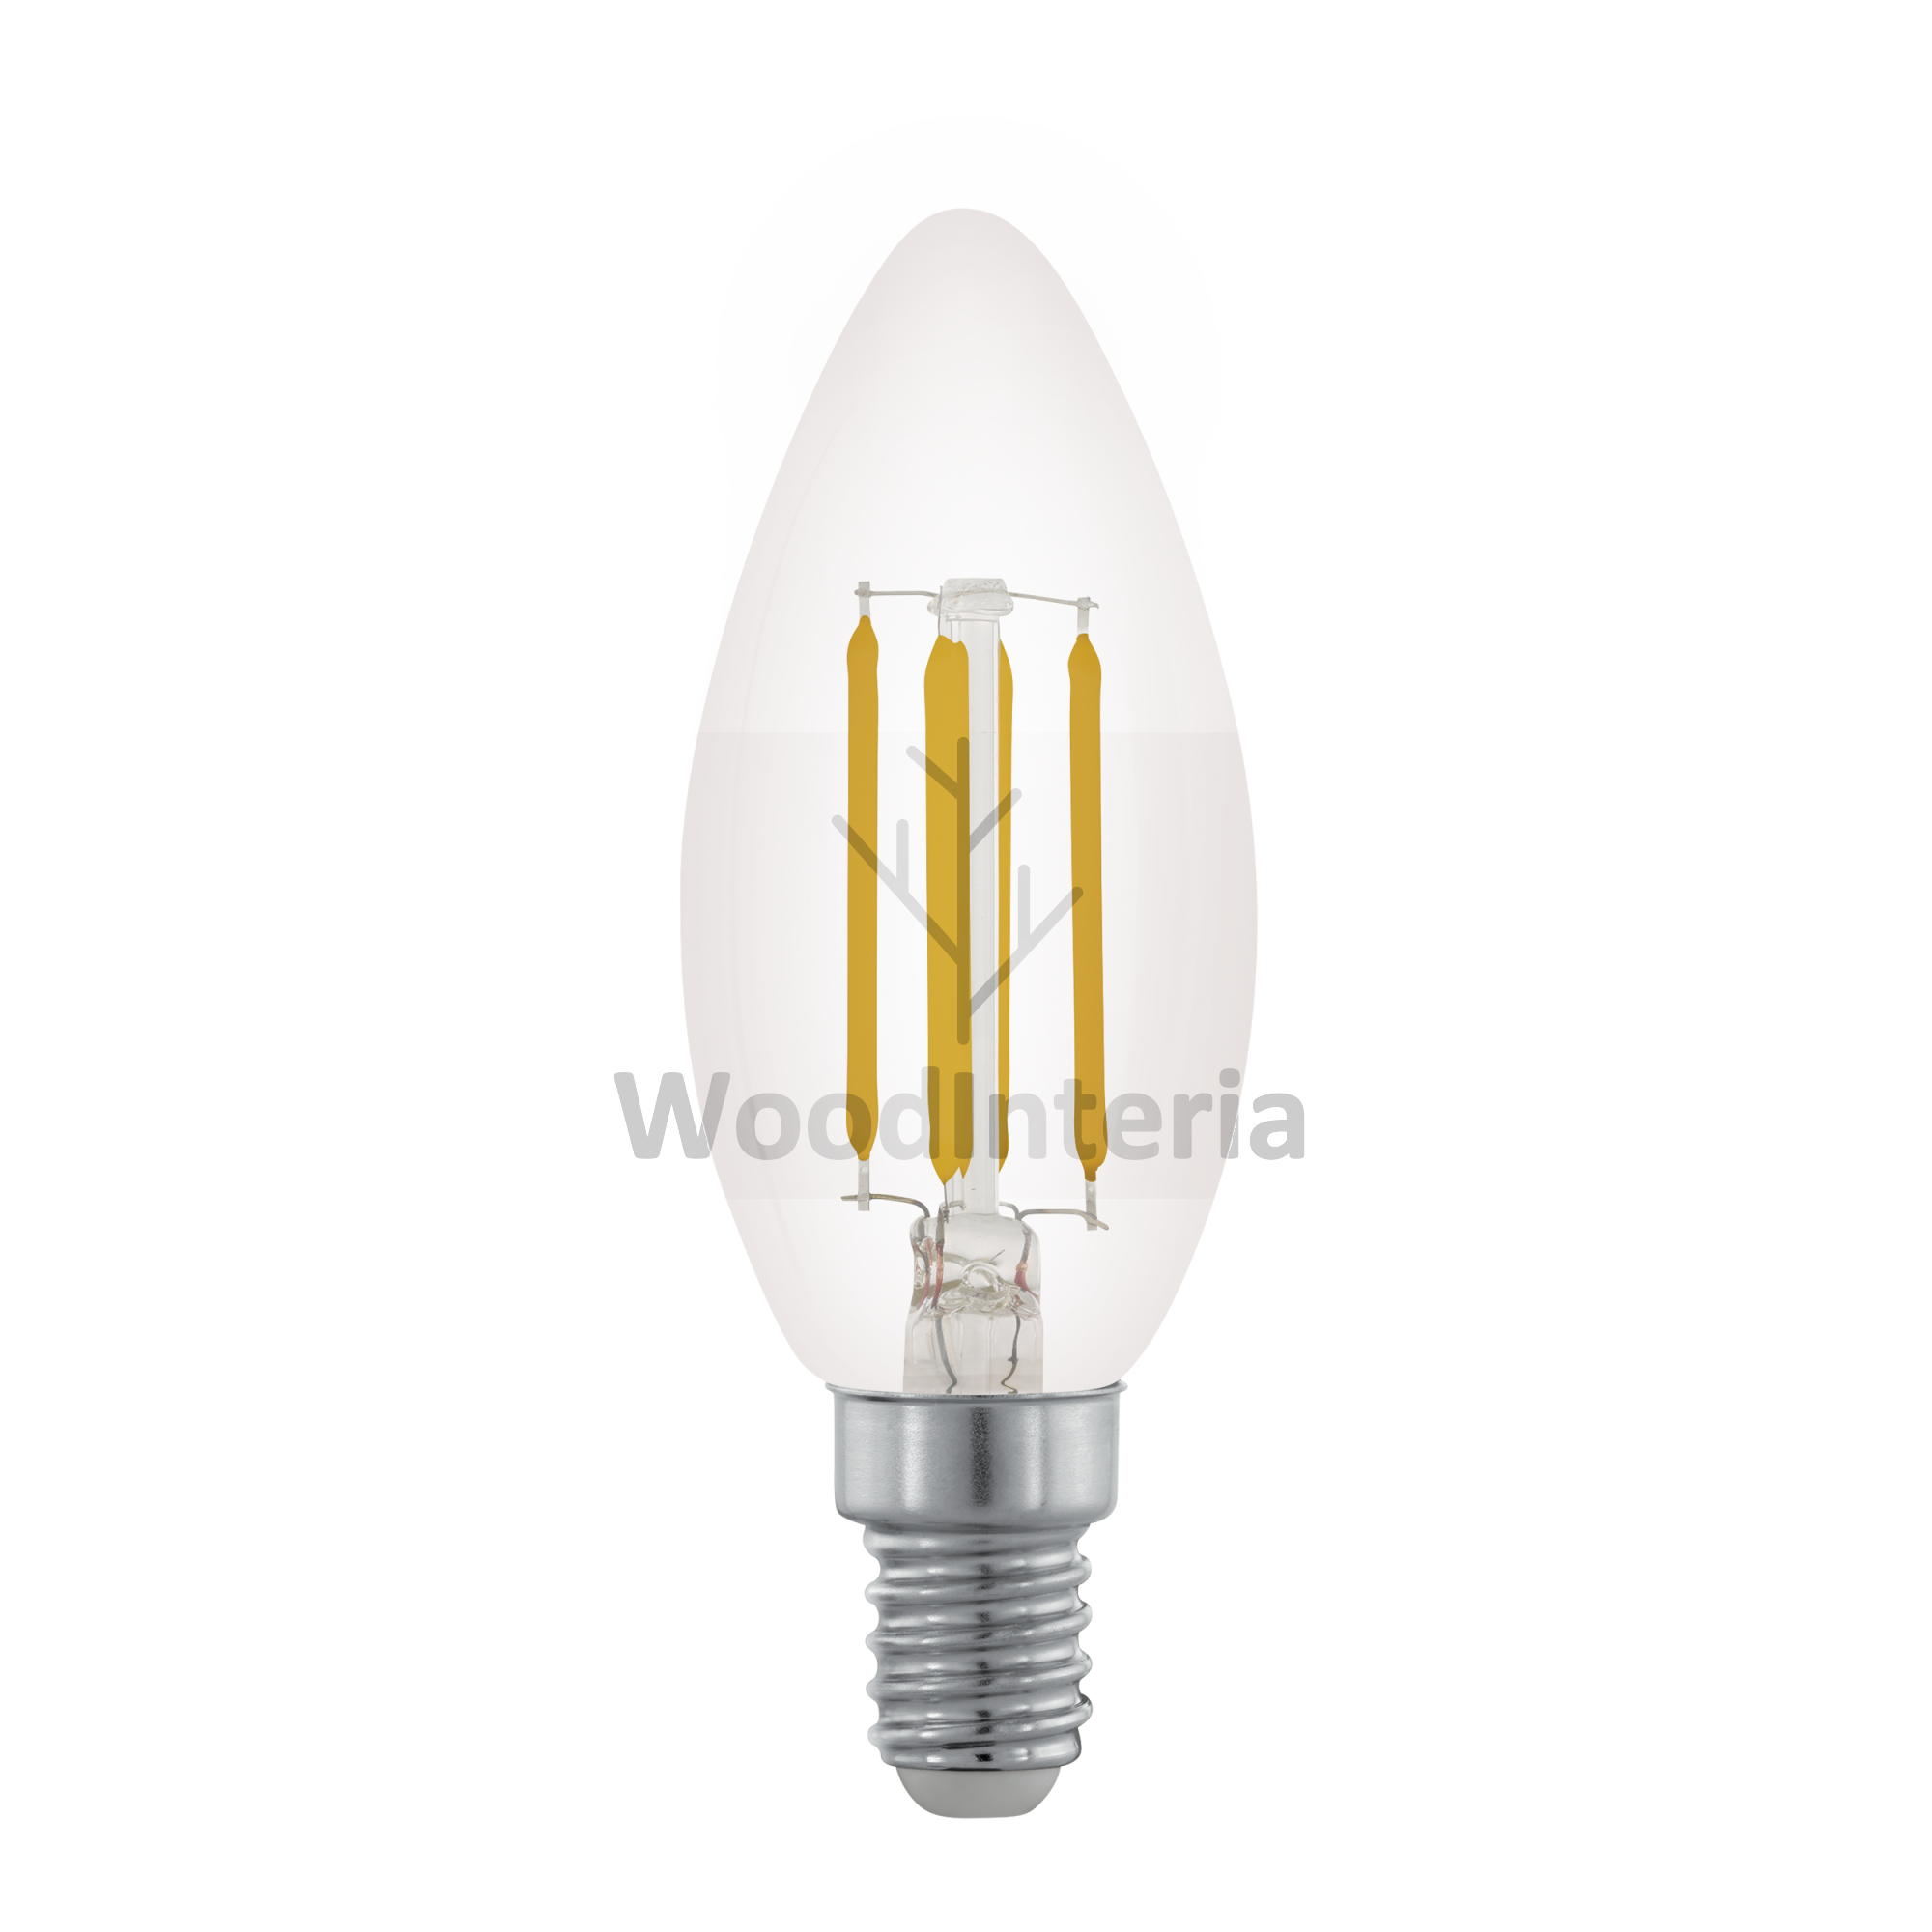 фото лампочка clean bulb #15 в скандинавском интерьере лофт эко | WoodInteria